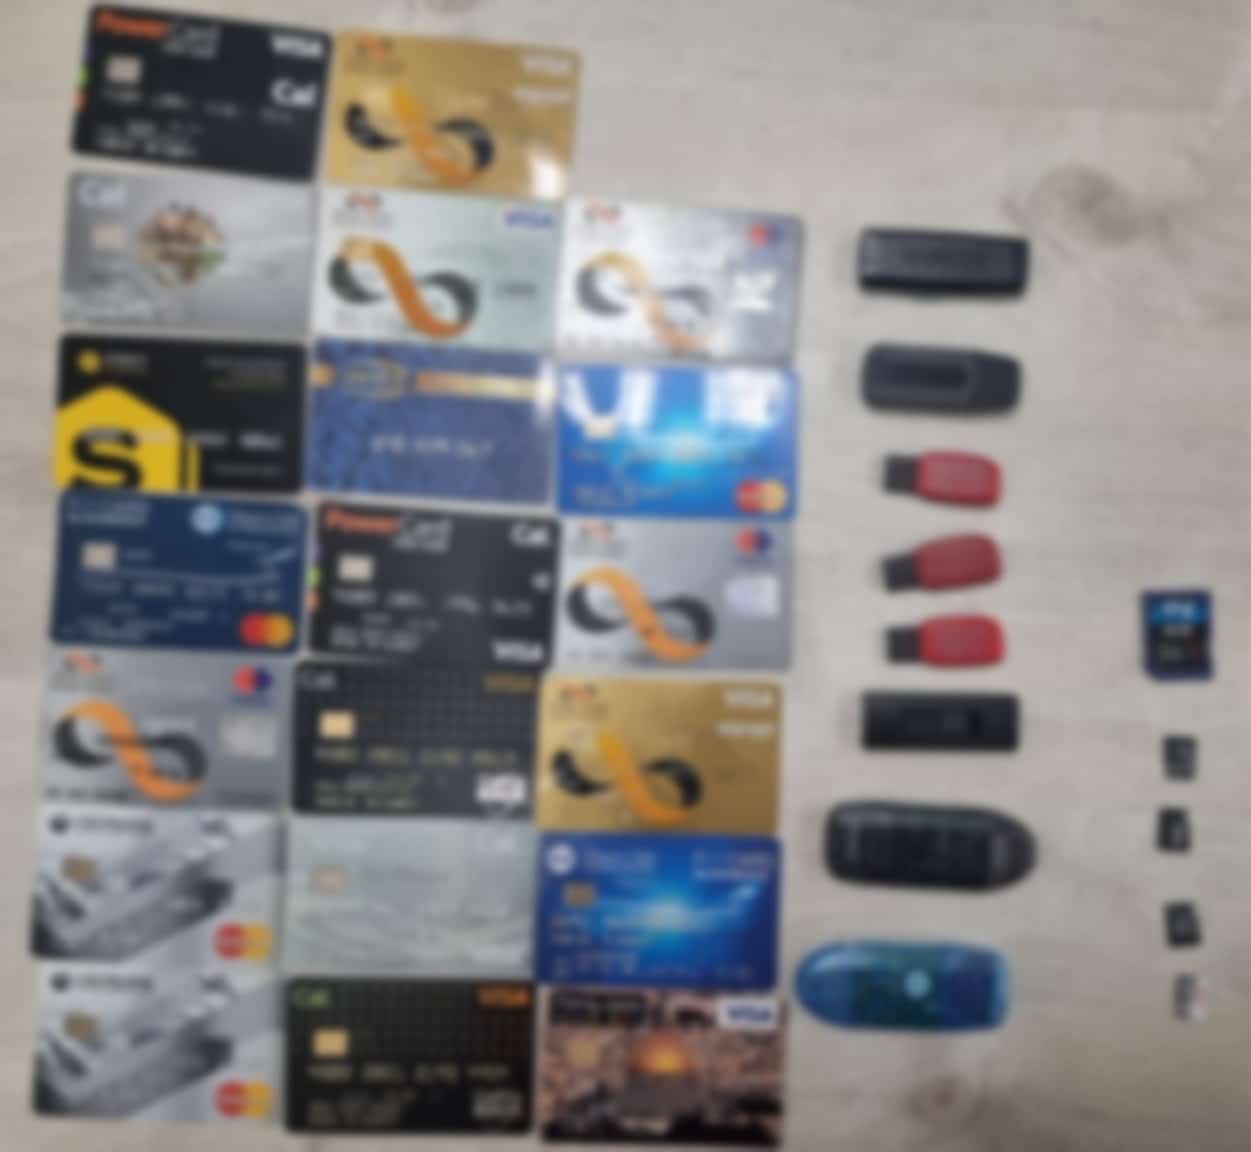 כרטיסי אשראי USB רכוש גנוב צילום דוברות משטרת ישראל